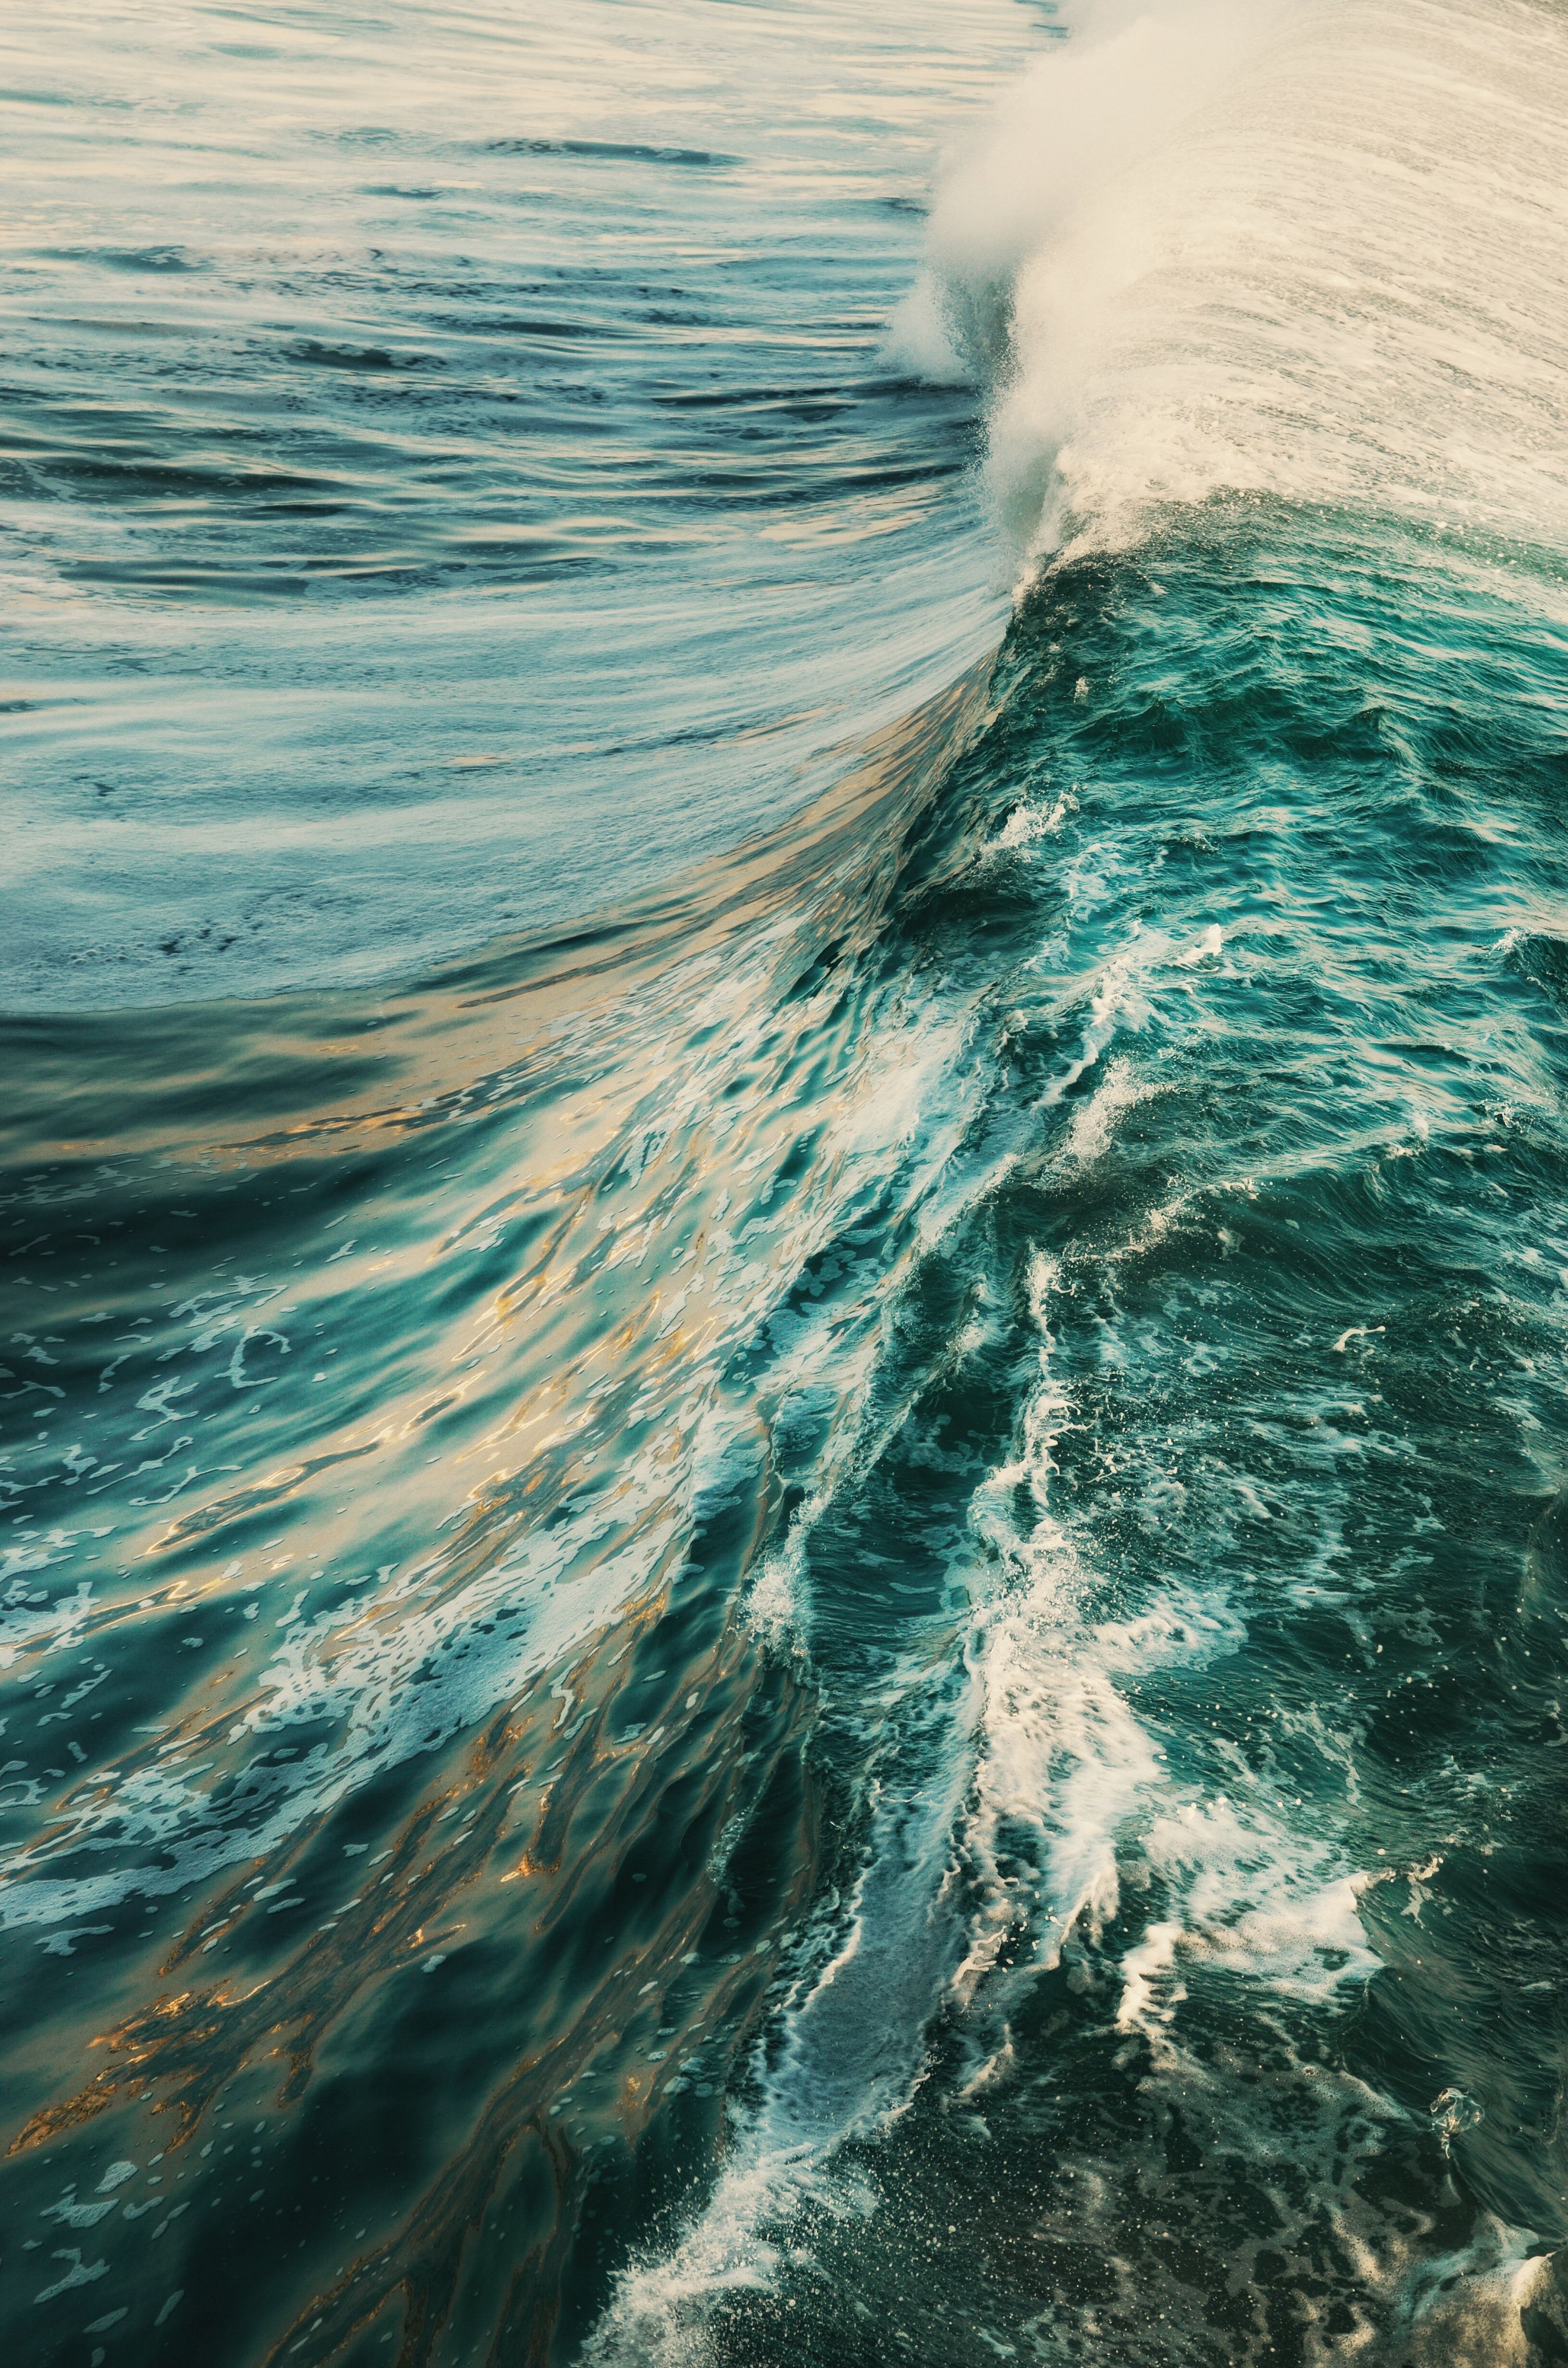 Waves Crashing Picture. Download Free Image